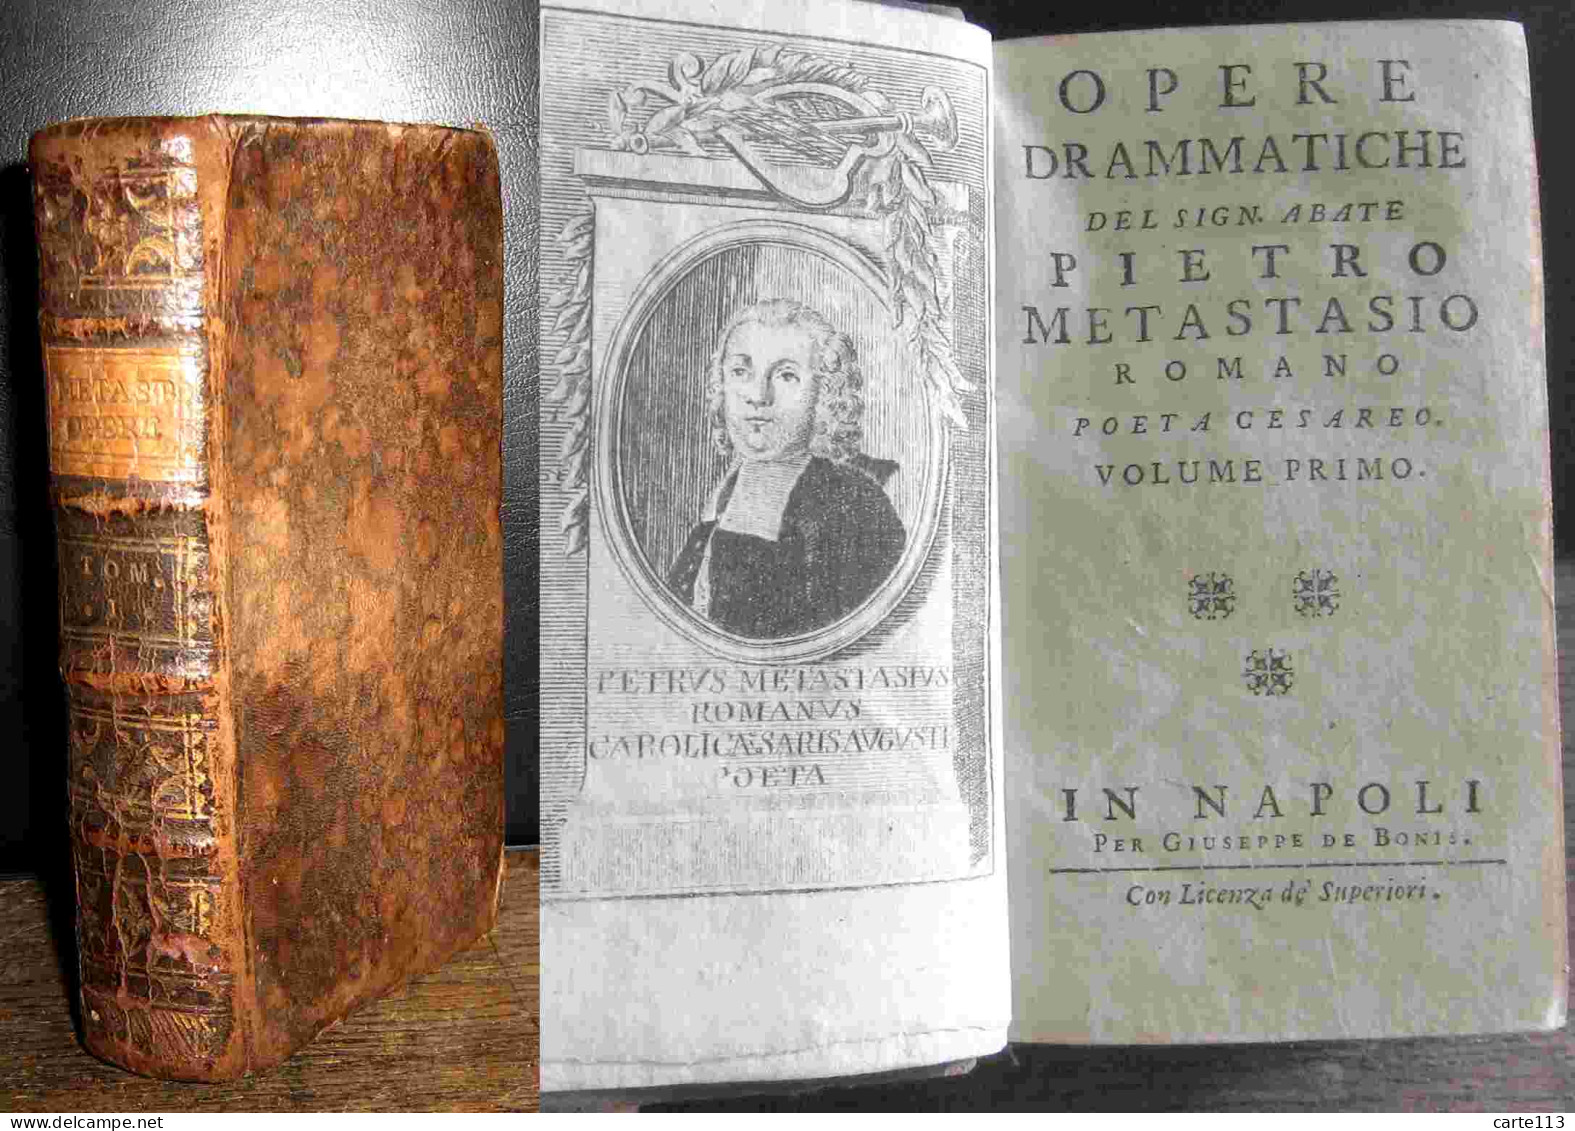 METASTASIO Pietro - OPERE DRAMMATICHE DEL SIGN. ABATE PIETRO METASTASIO ROMANO POETA CESA - 1701-1800